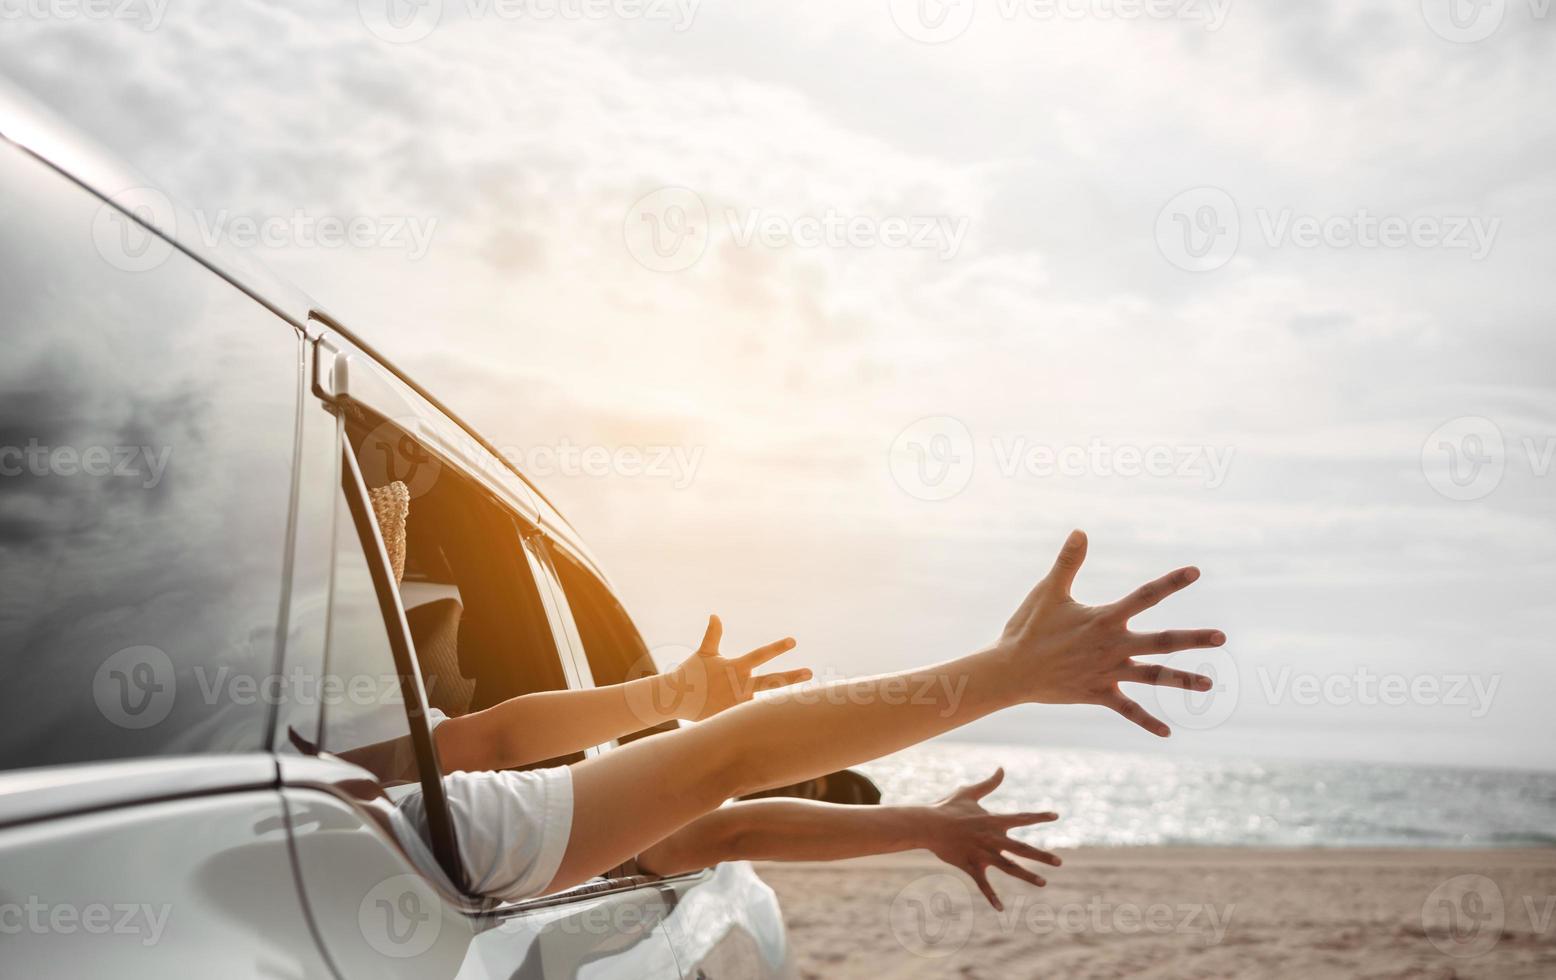 viagem de carro hatchback dirigindo viagem de férias de verão em família no carro ao pôr do sol, meninas felizes viajando aproveitem as férias e relaxem juntas peguem a atmosfera e vão para o destino foto